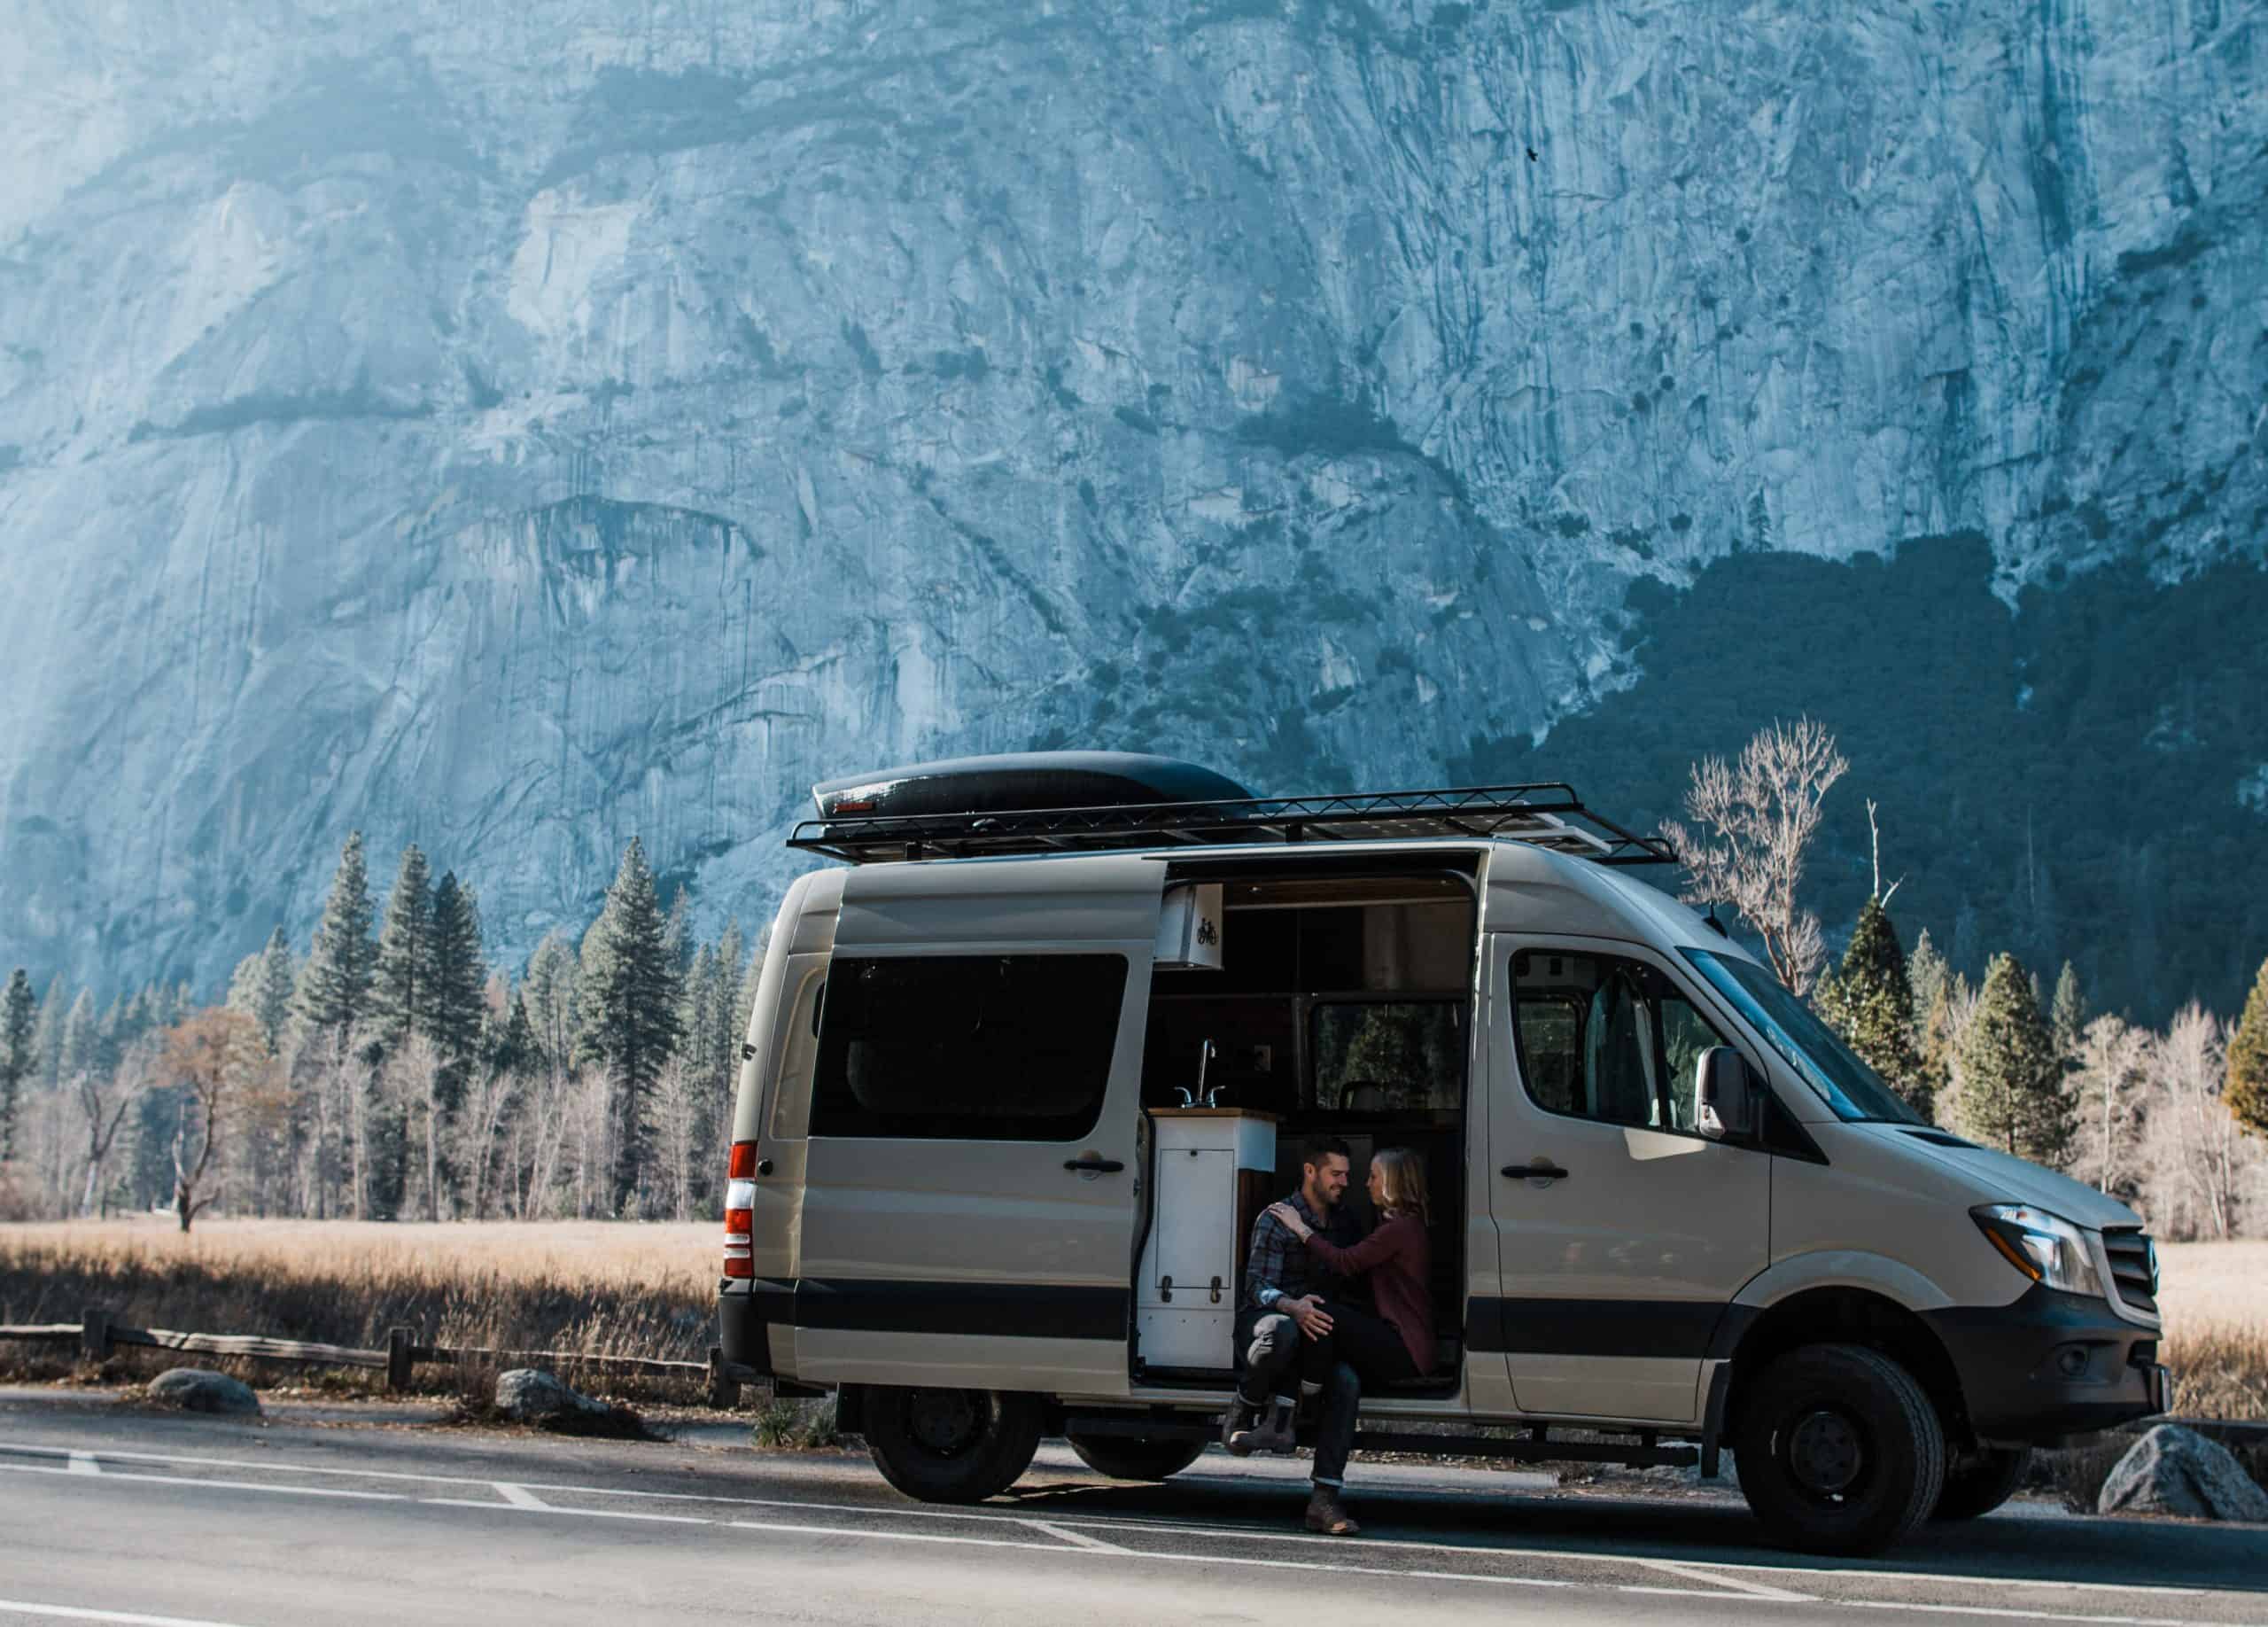 Couple embracing in the door of their overlanding van in front of mountains